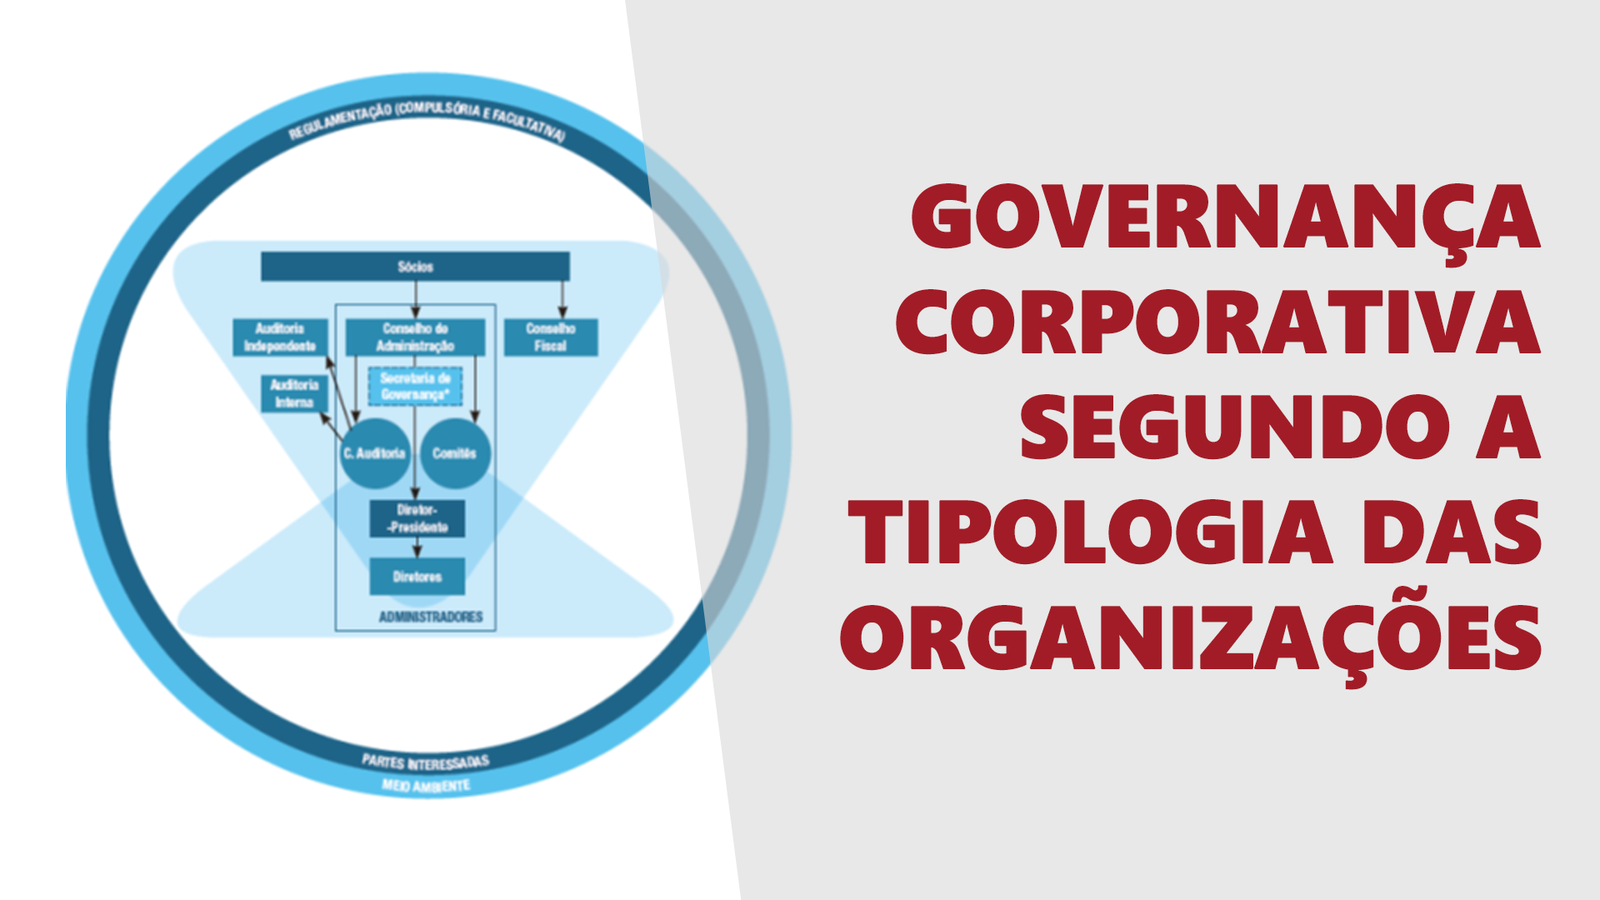 Governança Corporativa segundo a tipologia das organizações